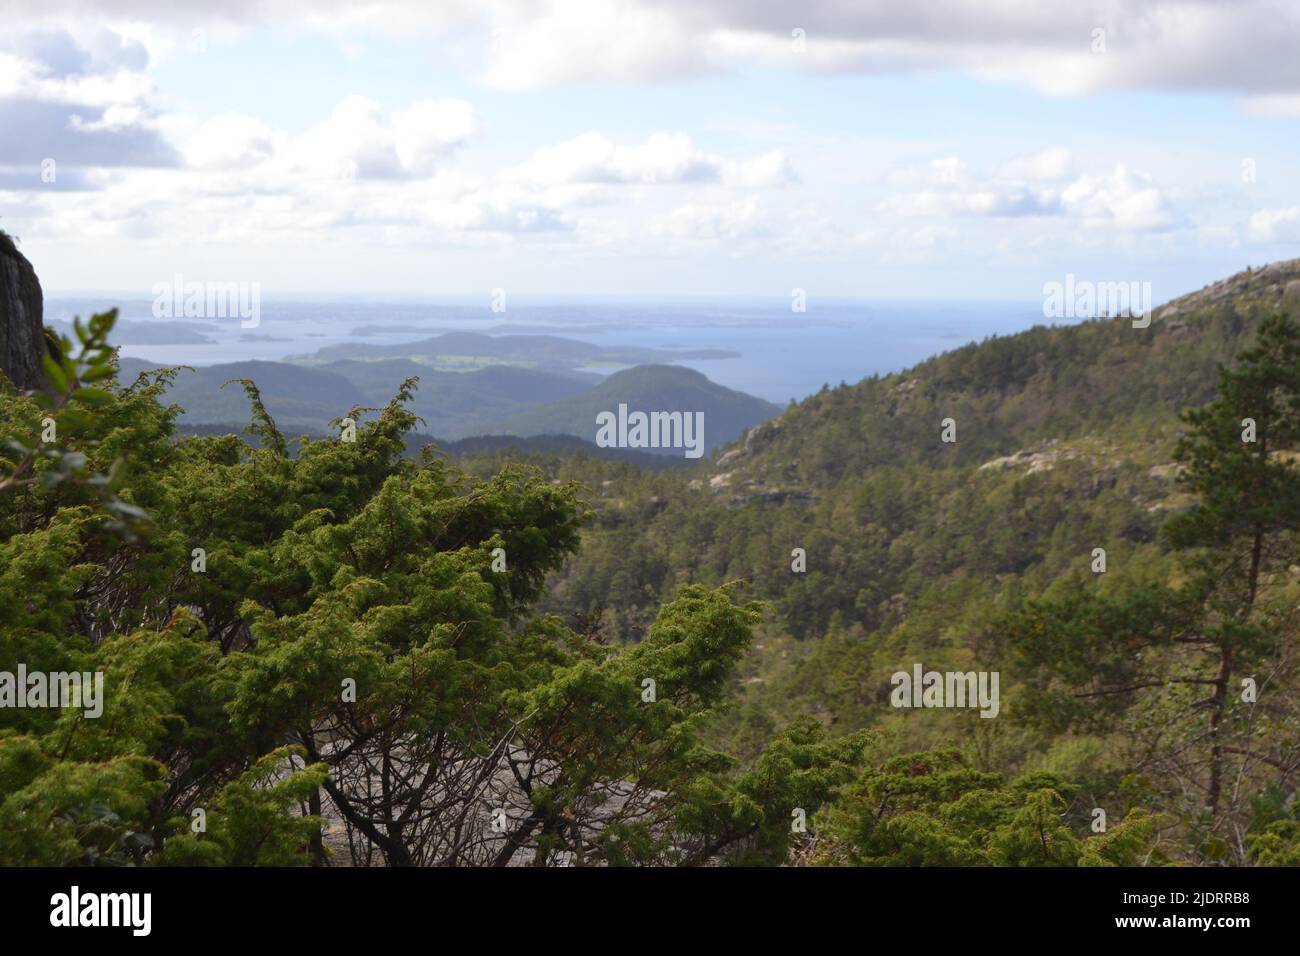 Vista sobre las montañas boscosas de Ryfylke, Noruega Foto de stock